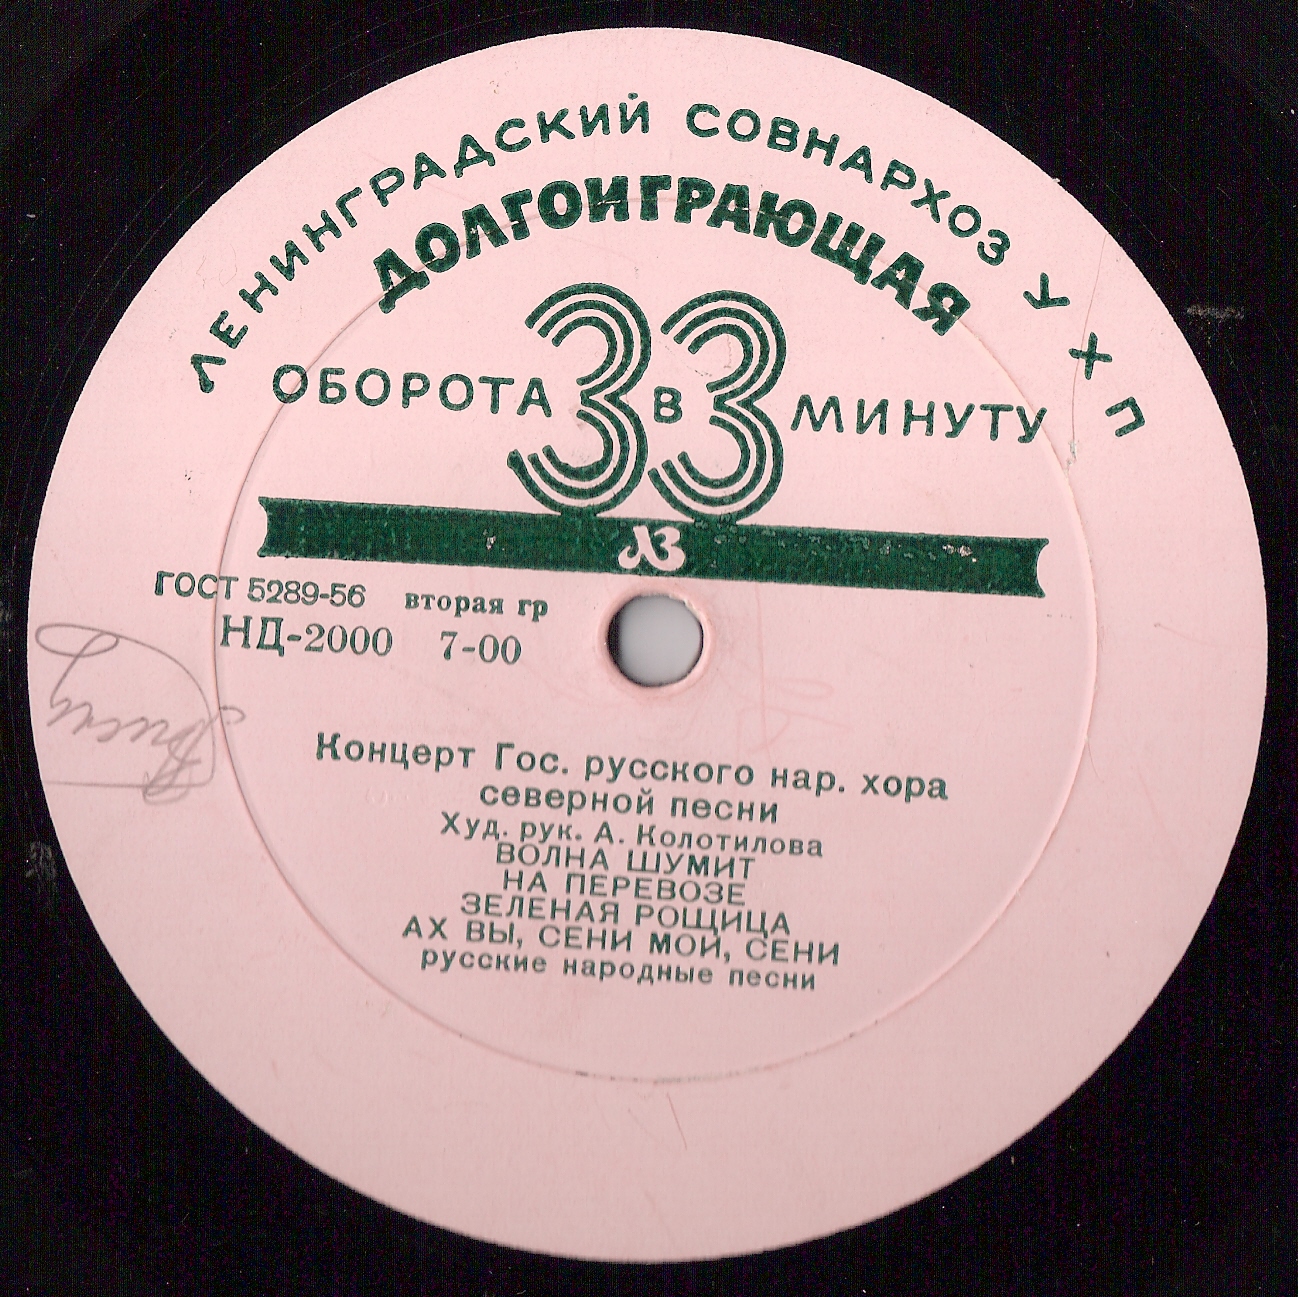 Концерт Государственного Русского народного хора северной песни